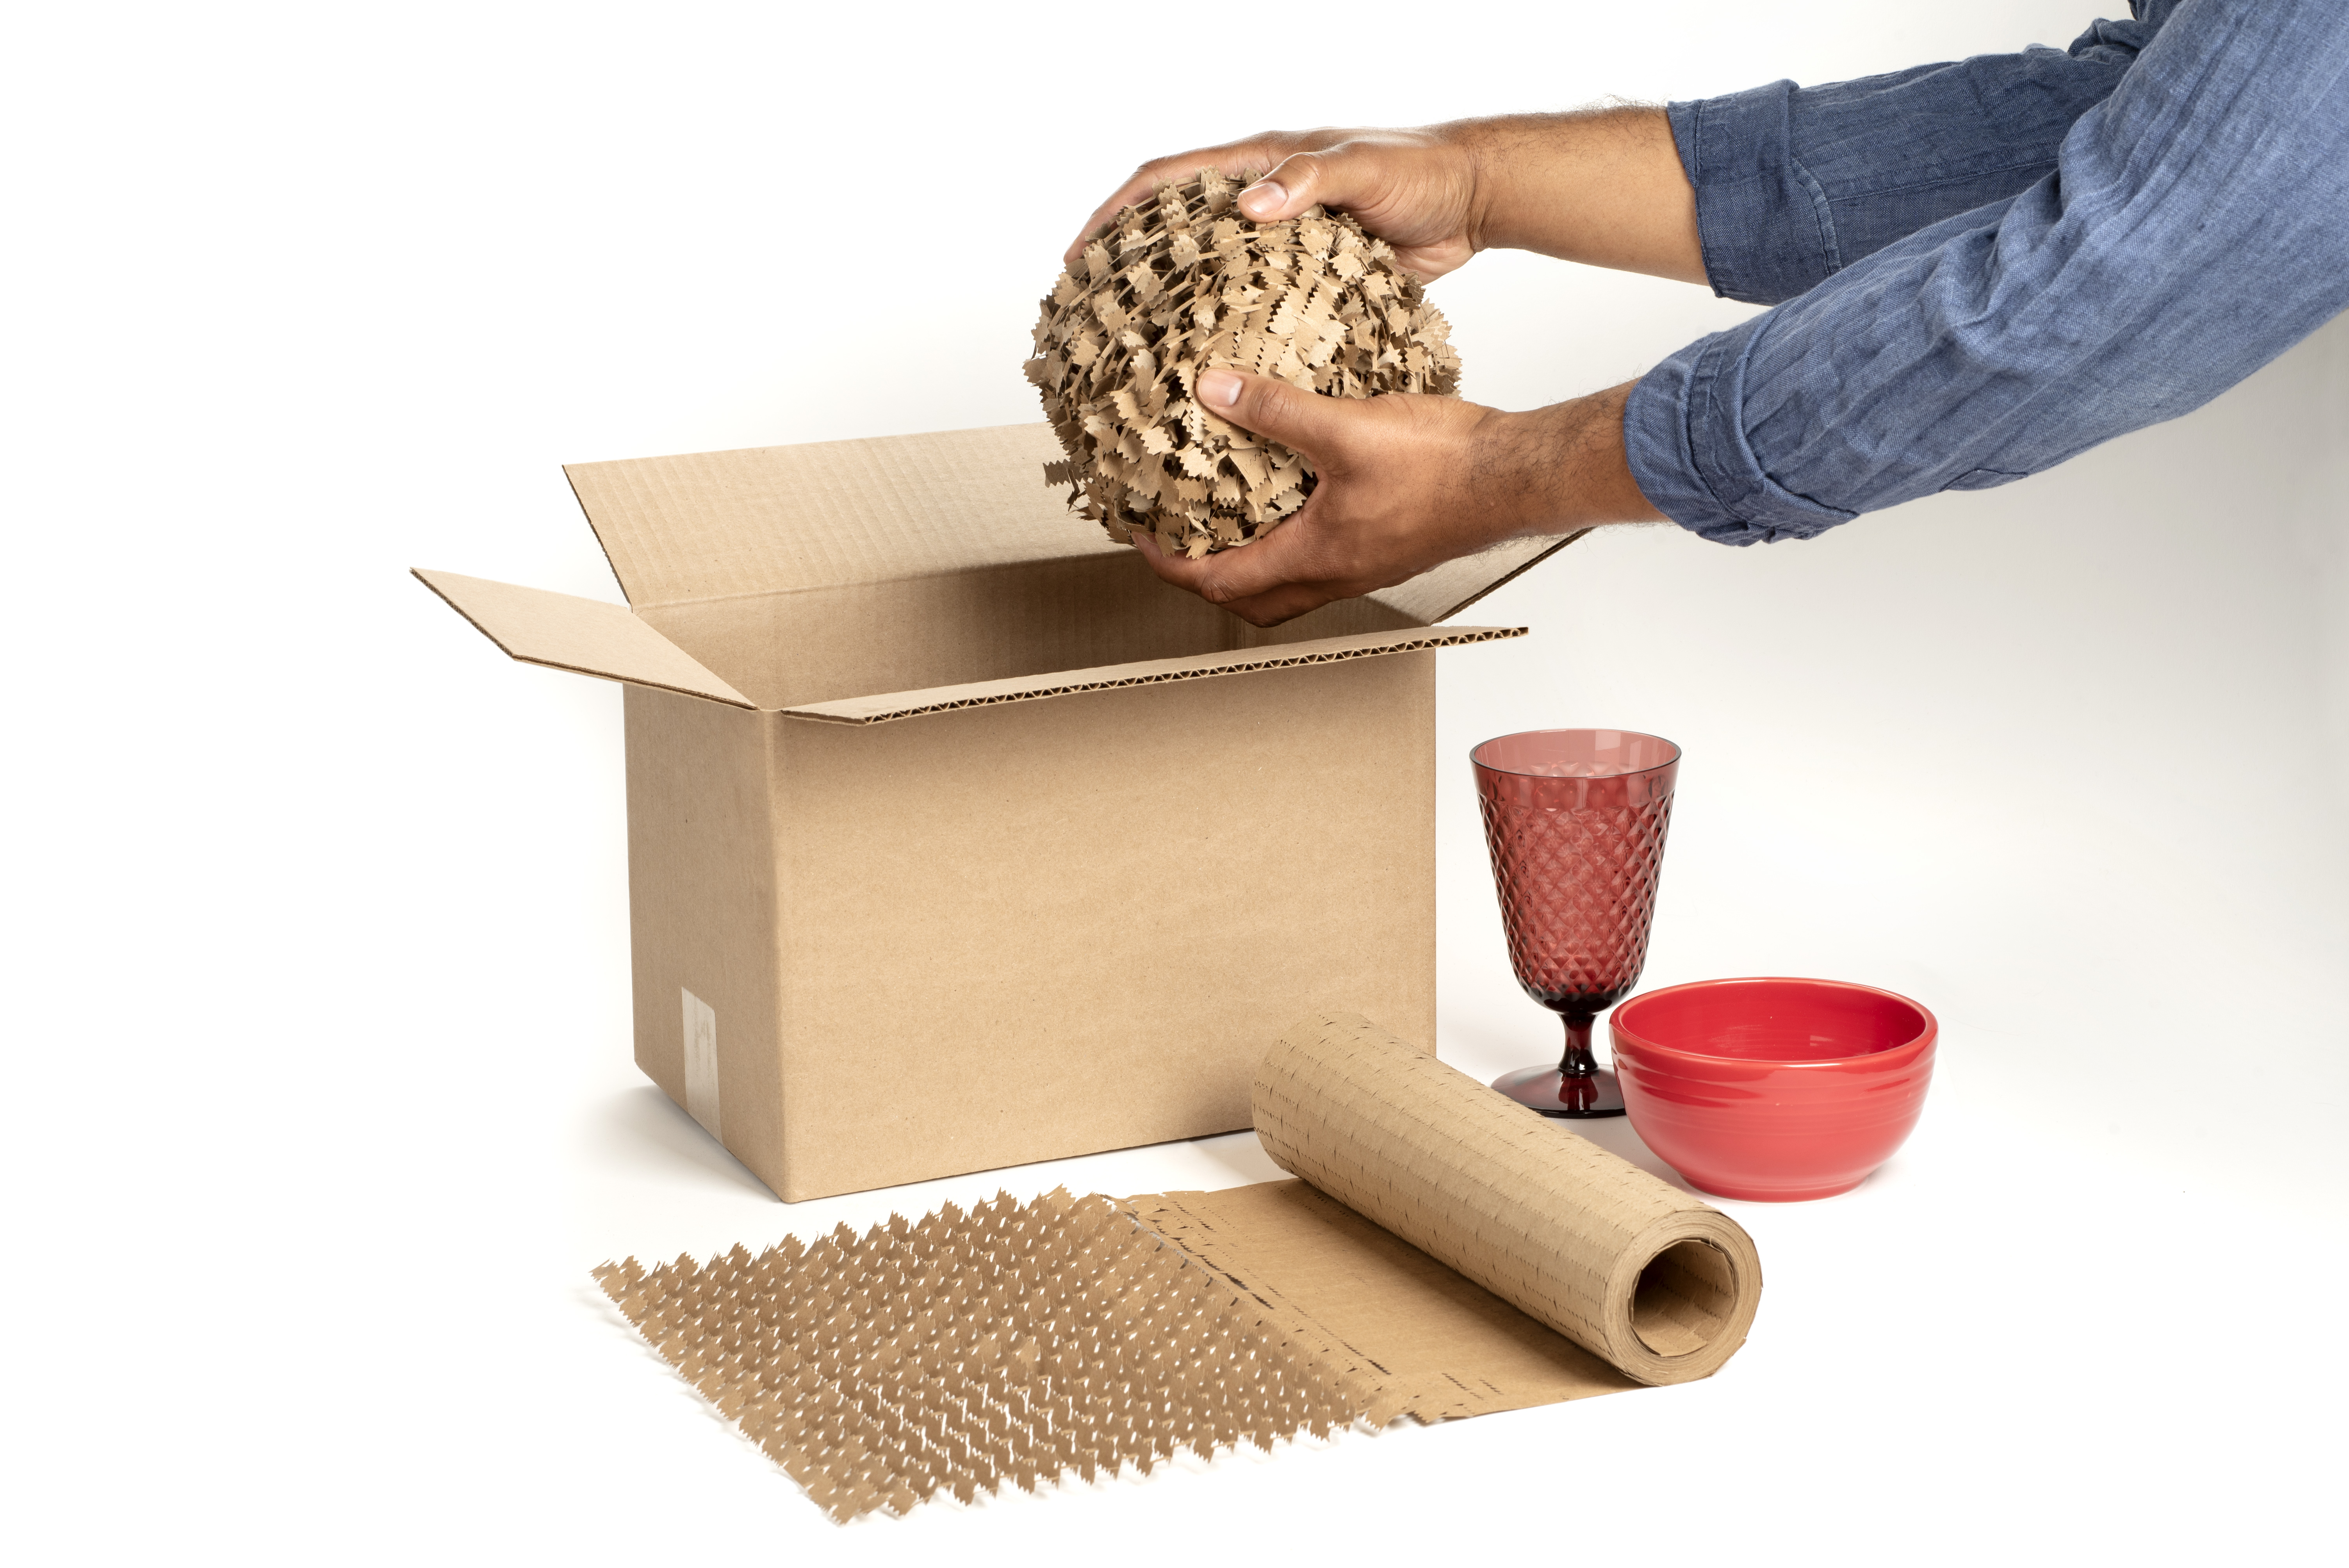 Paper packaging & packaging material